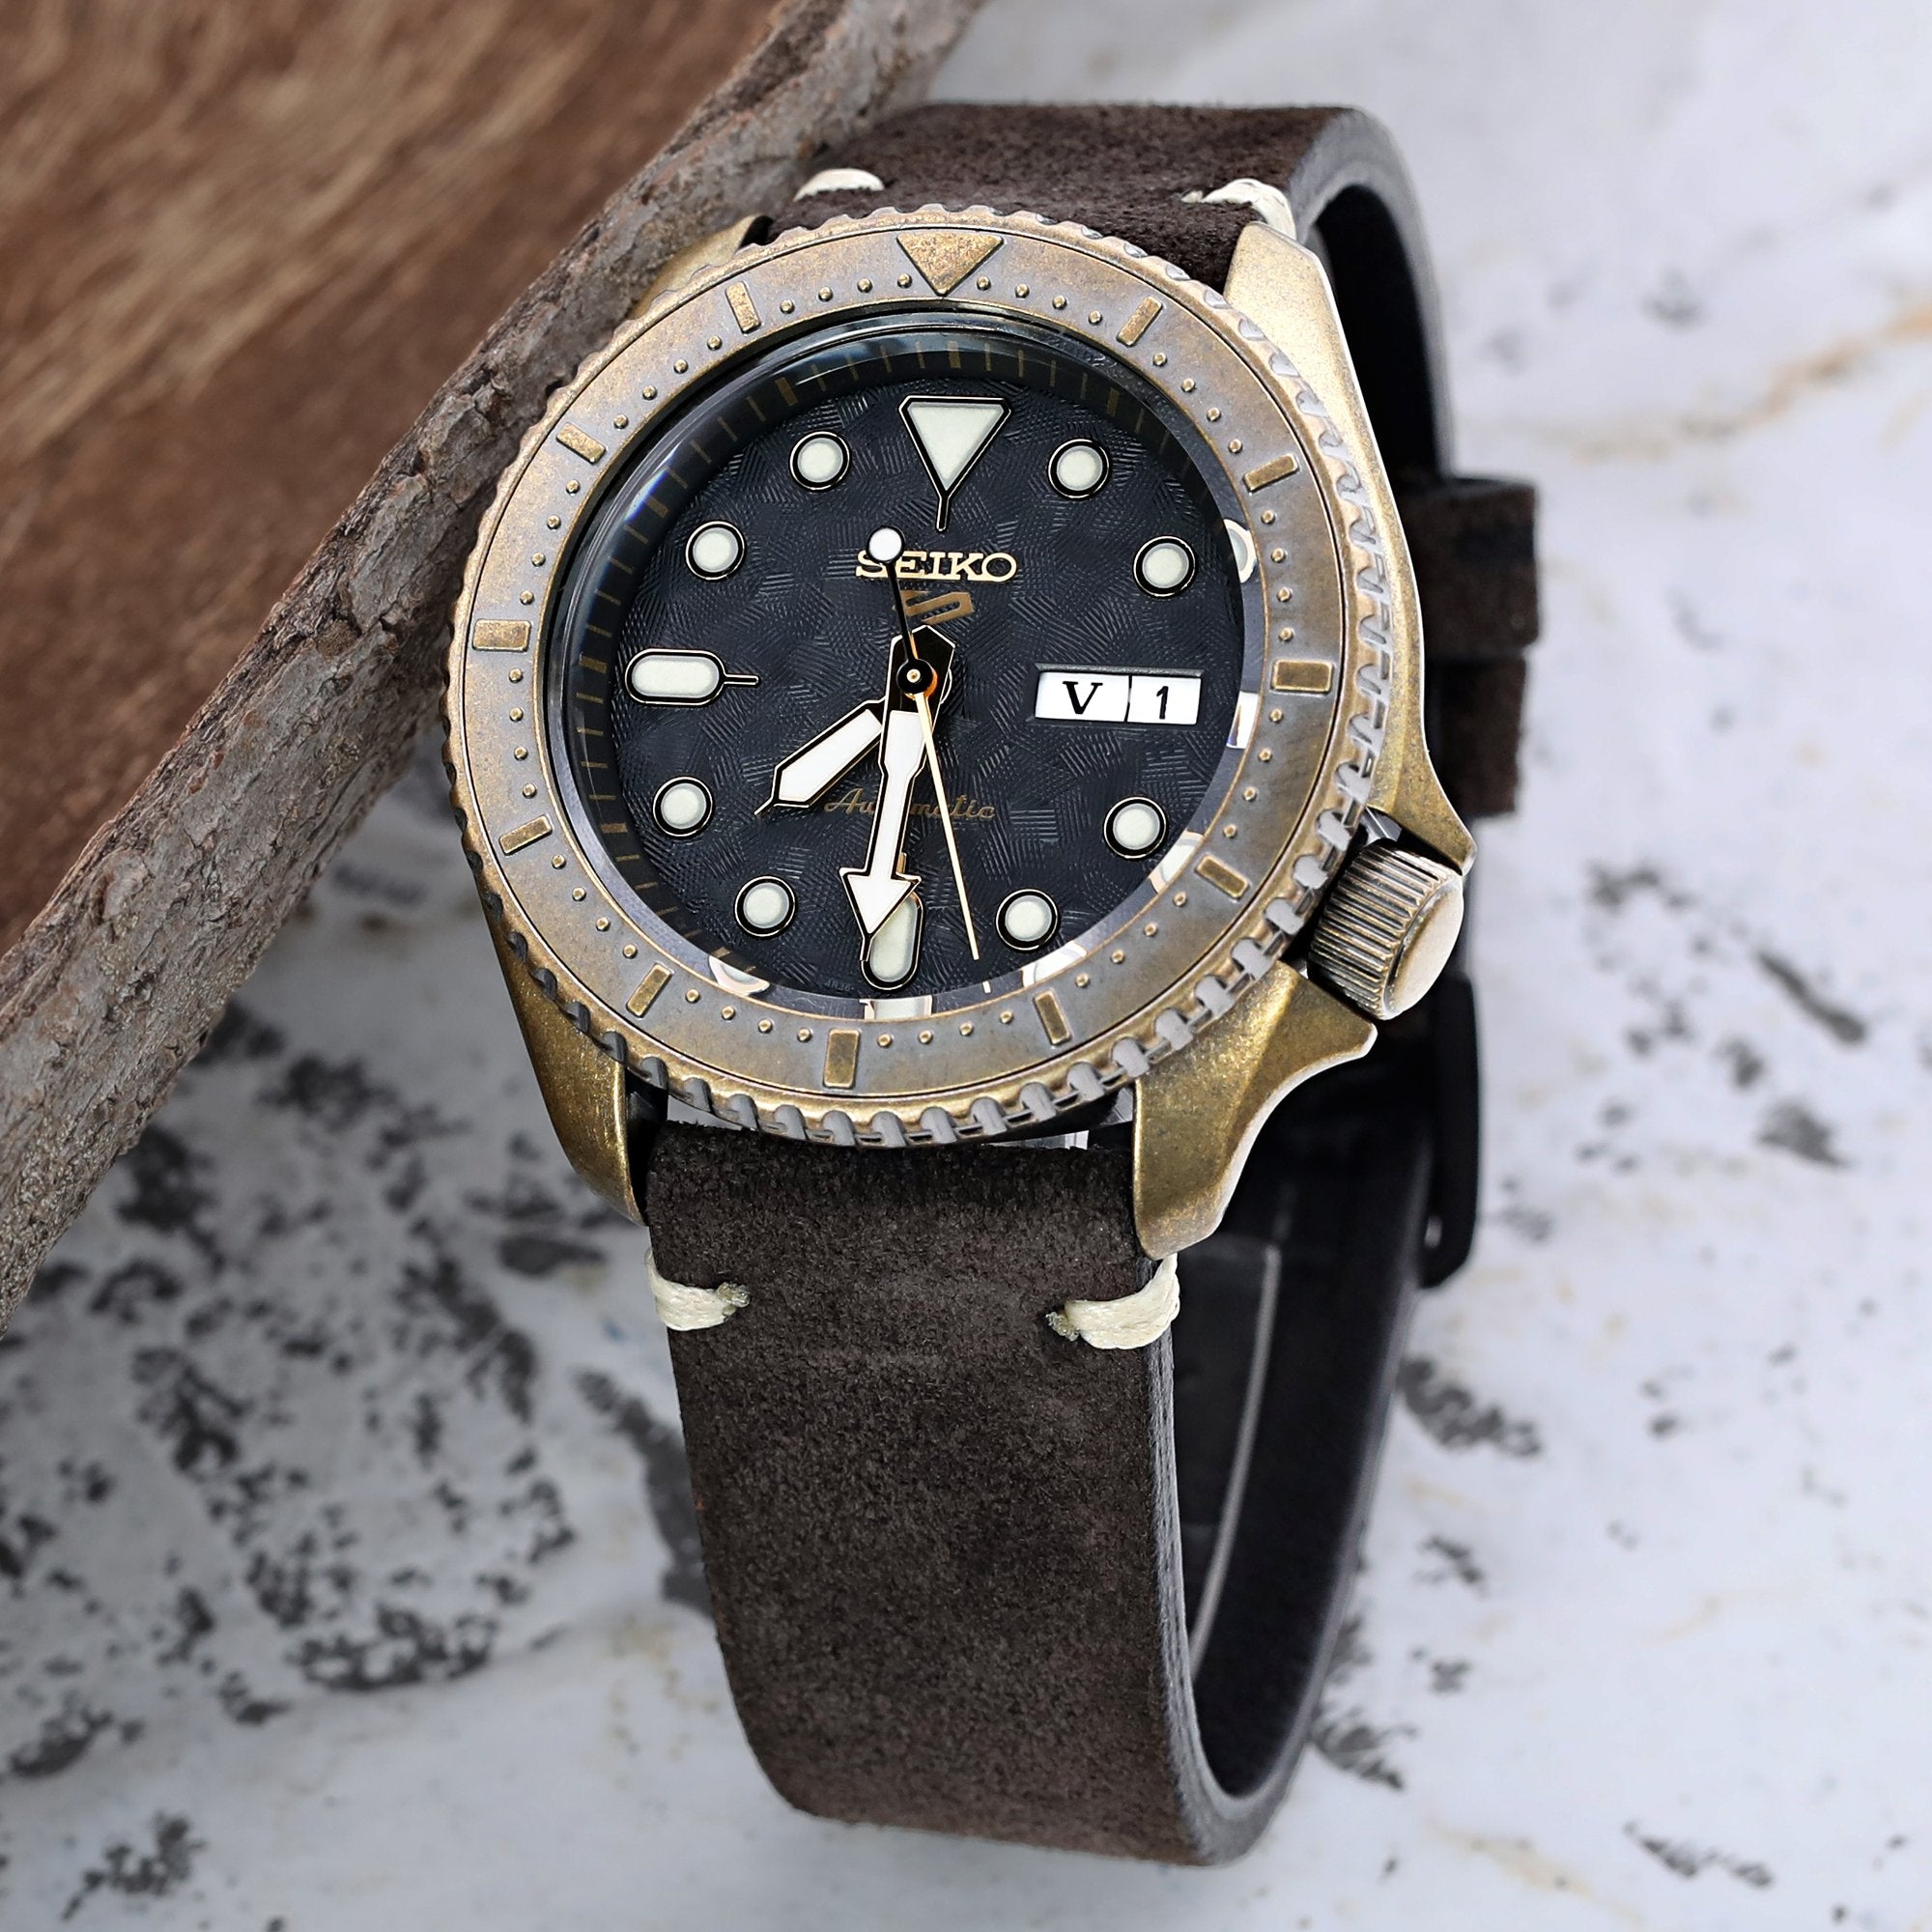 20mm MiLTAT Senno G10 Leather Watch Strap LV Beige, Brushed